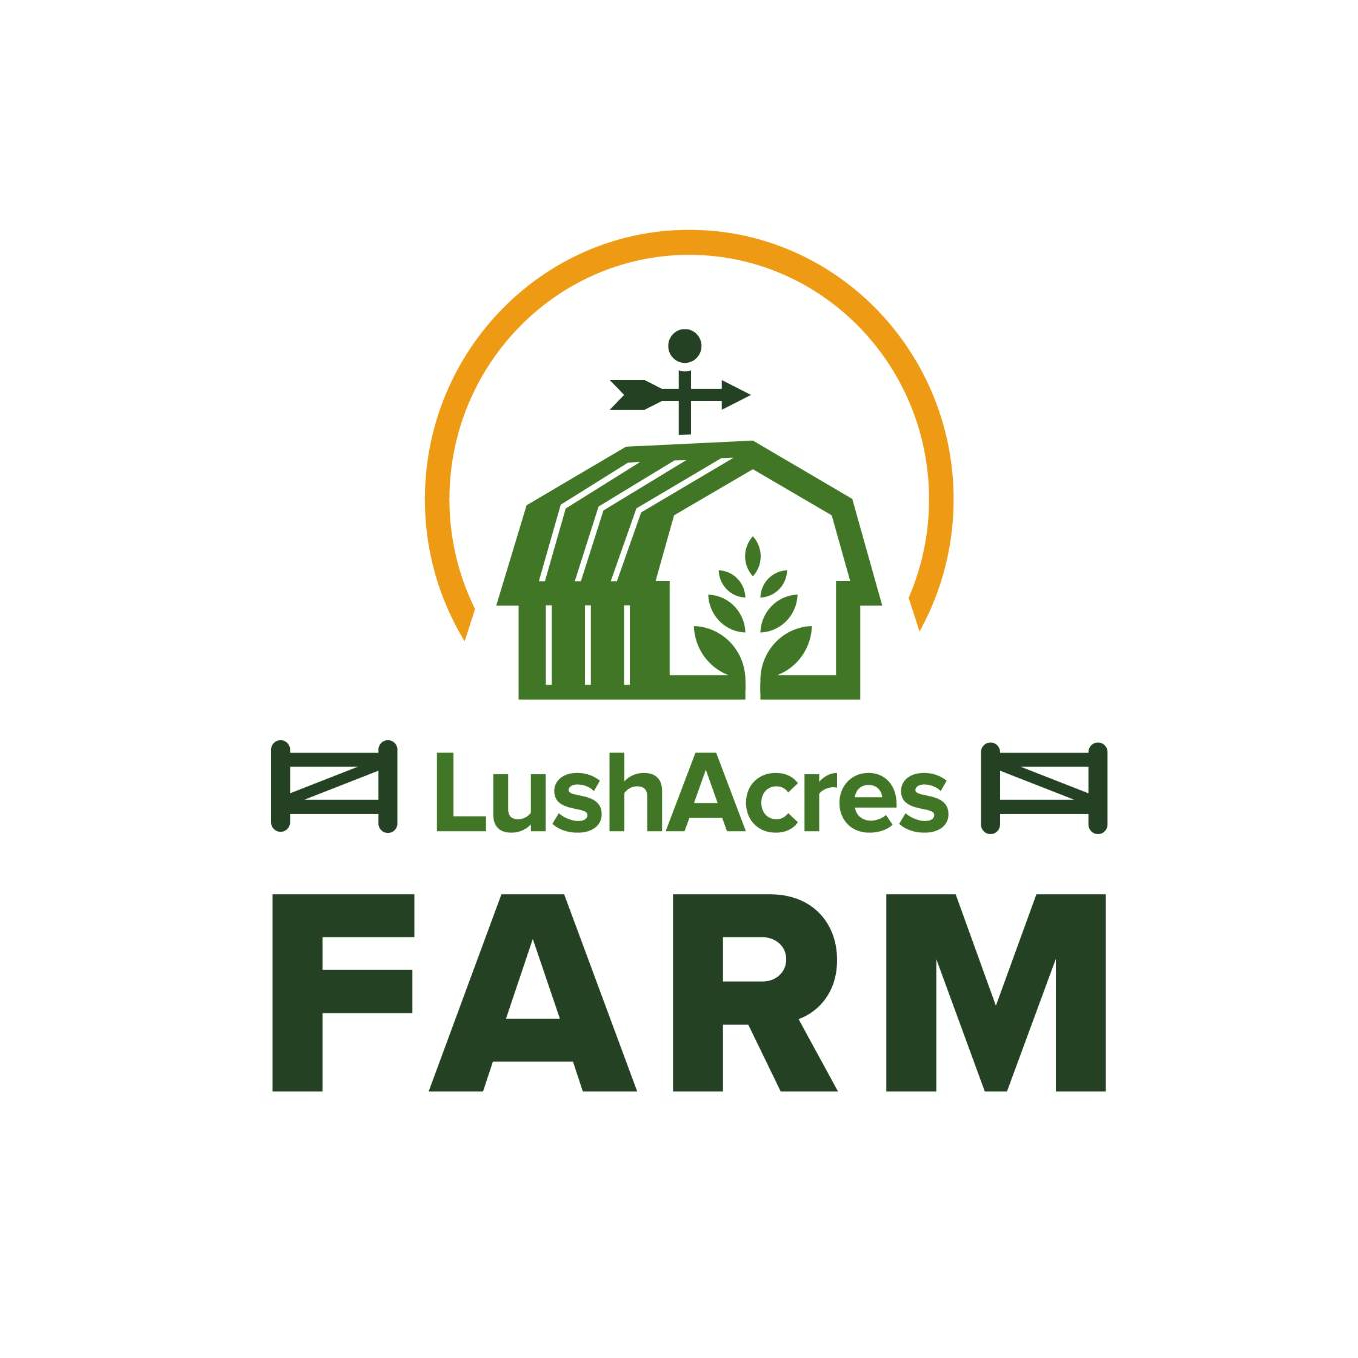 Lush Acres Farm